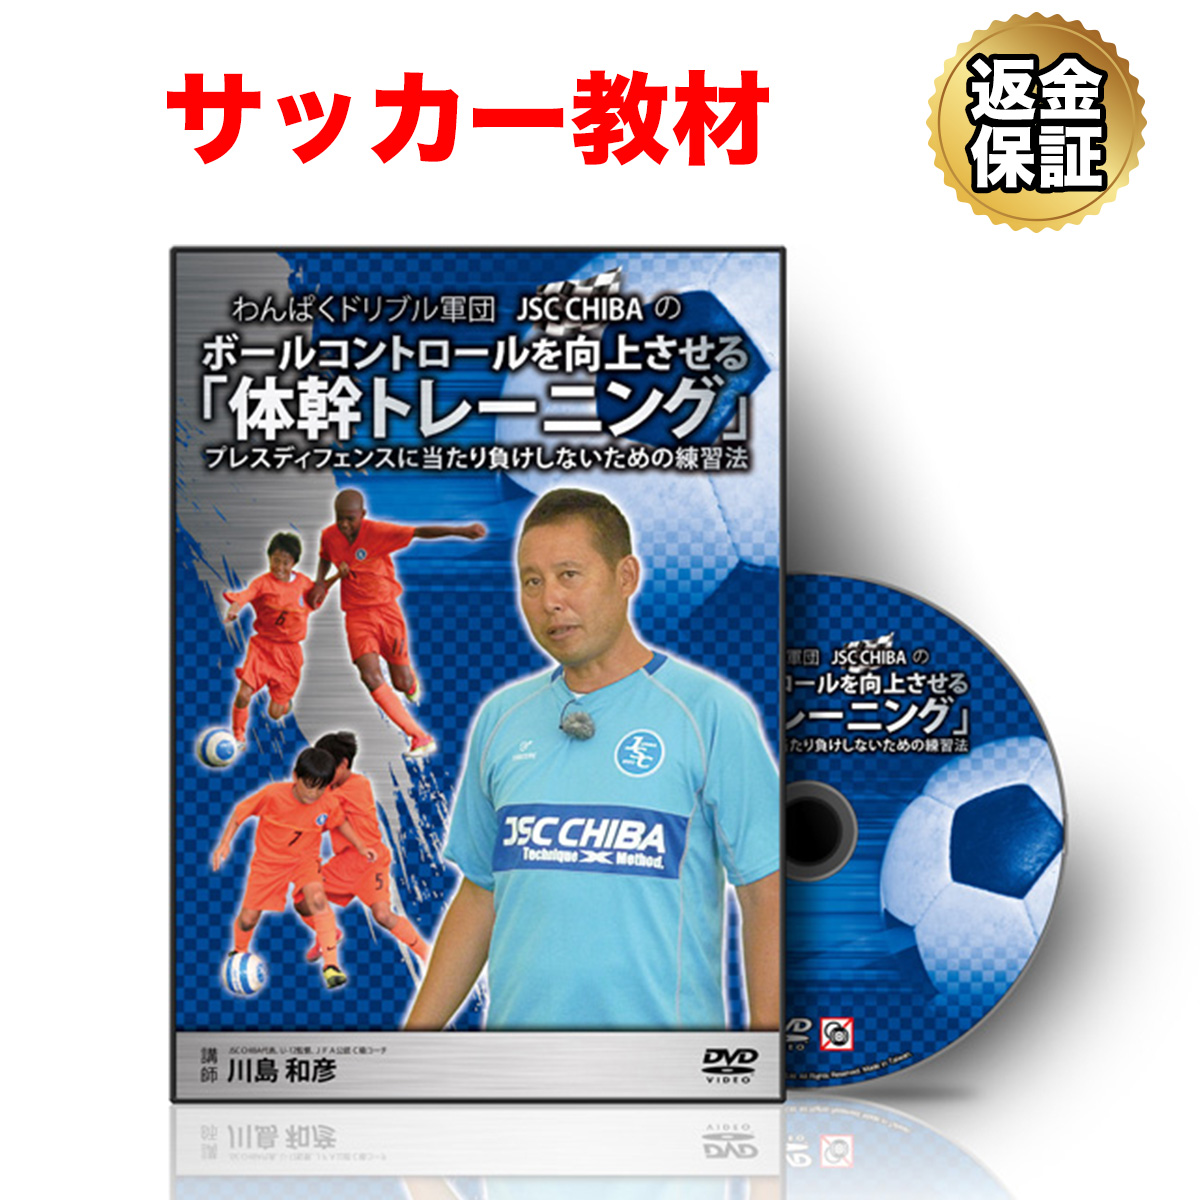 楽天市場 サッカー 教材 Dvd わんぱくドリブル軍団jsc Chibaのボールコントロールを向上させる 体幹トレーニング プレスディフェンスに当たり負けしないための練習法 ビーレジェンド 公式 Real Style